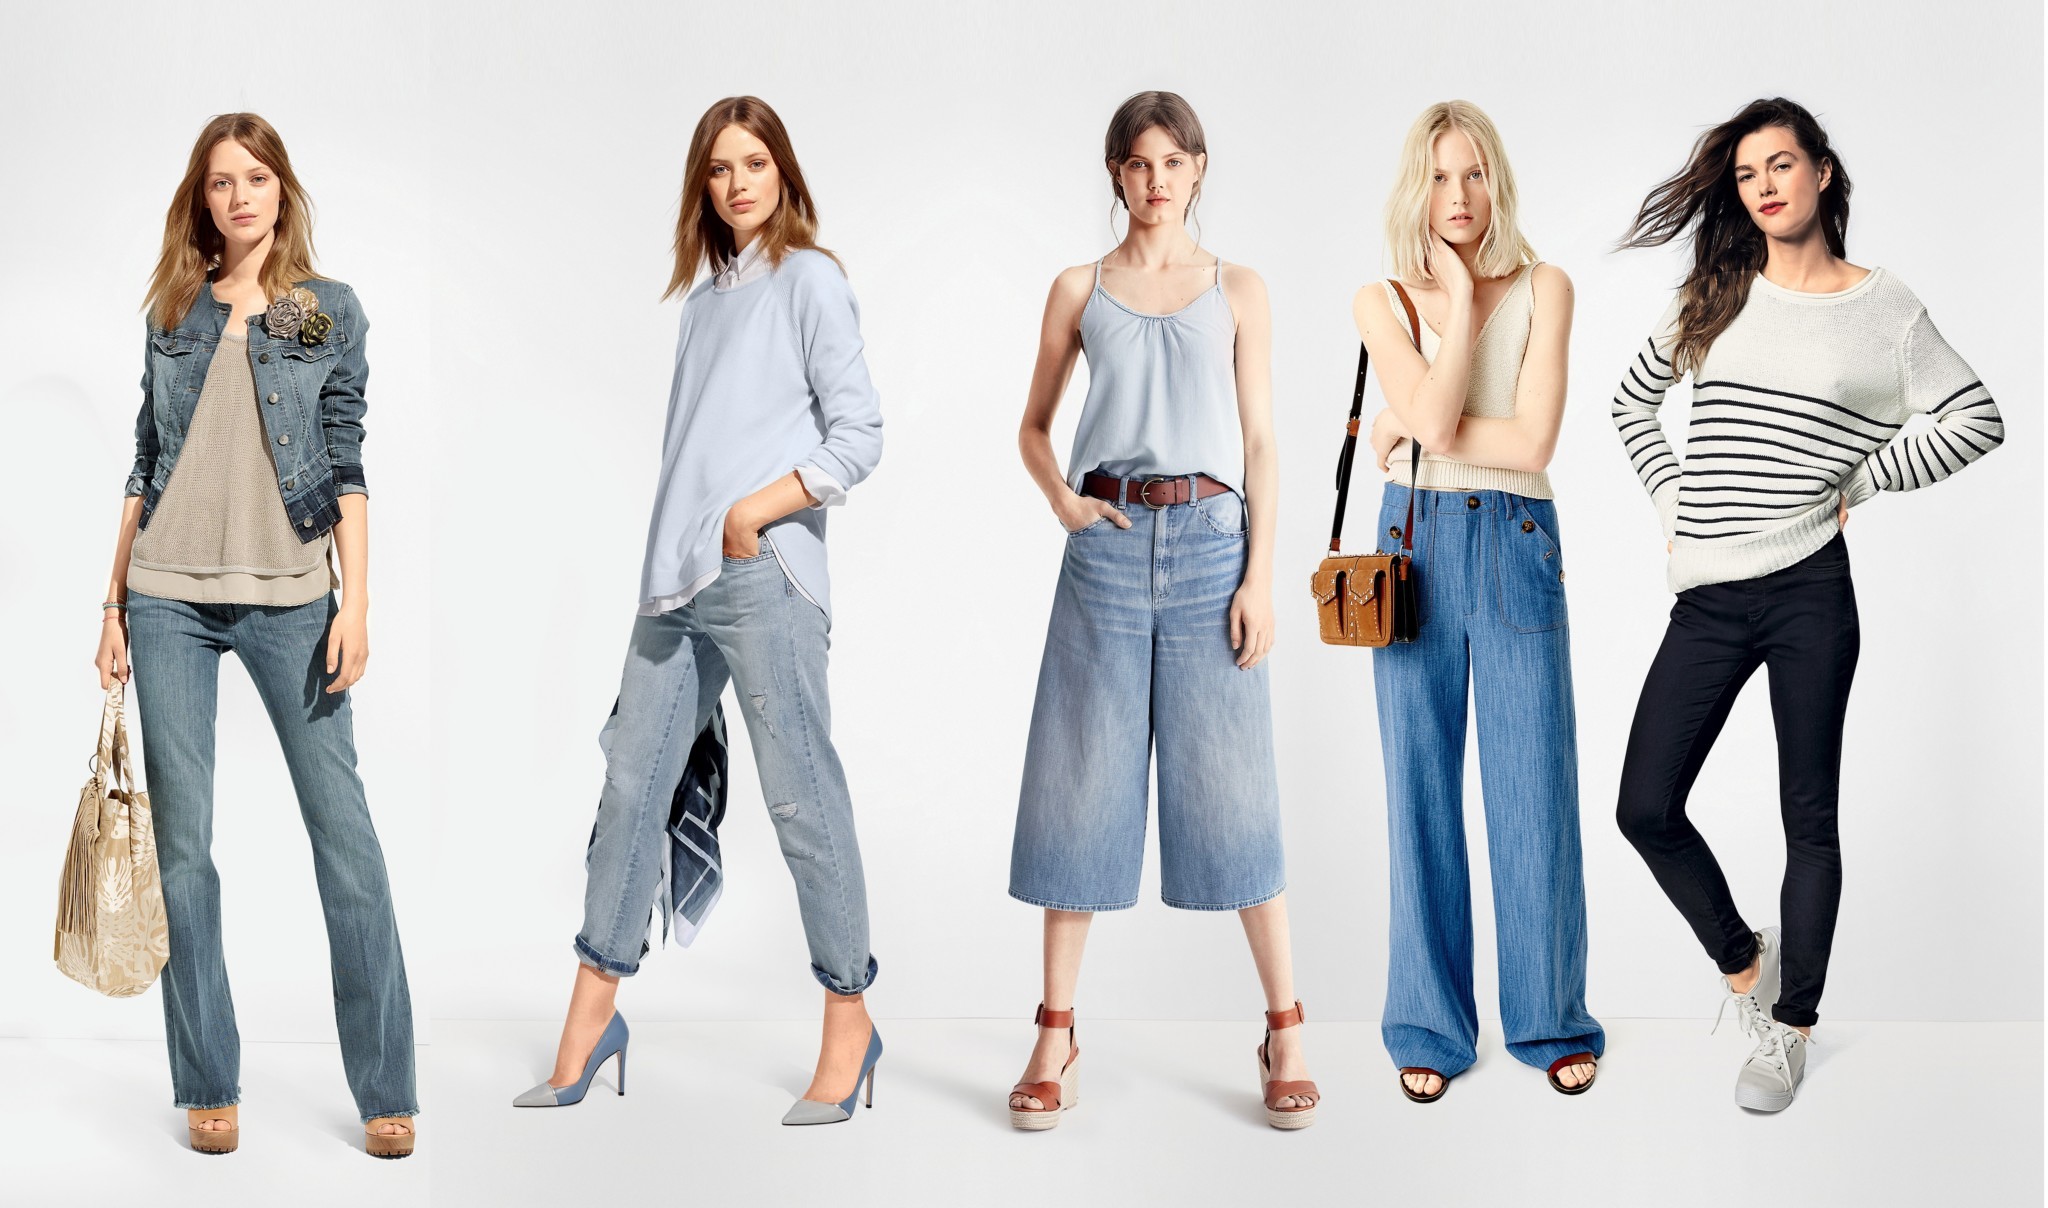 Широкие джинсы модели. Современная одежда для женщин. Джинсы разные фасоны. Разные стили одежды. Широкие джинсы.